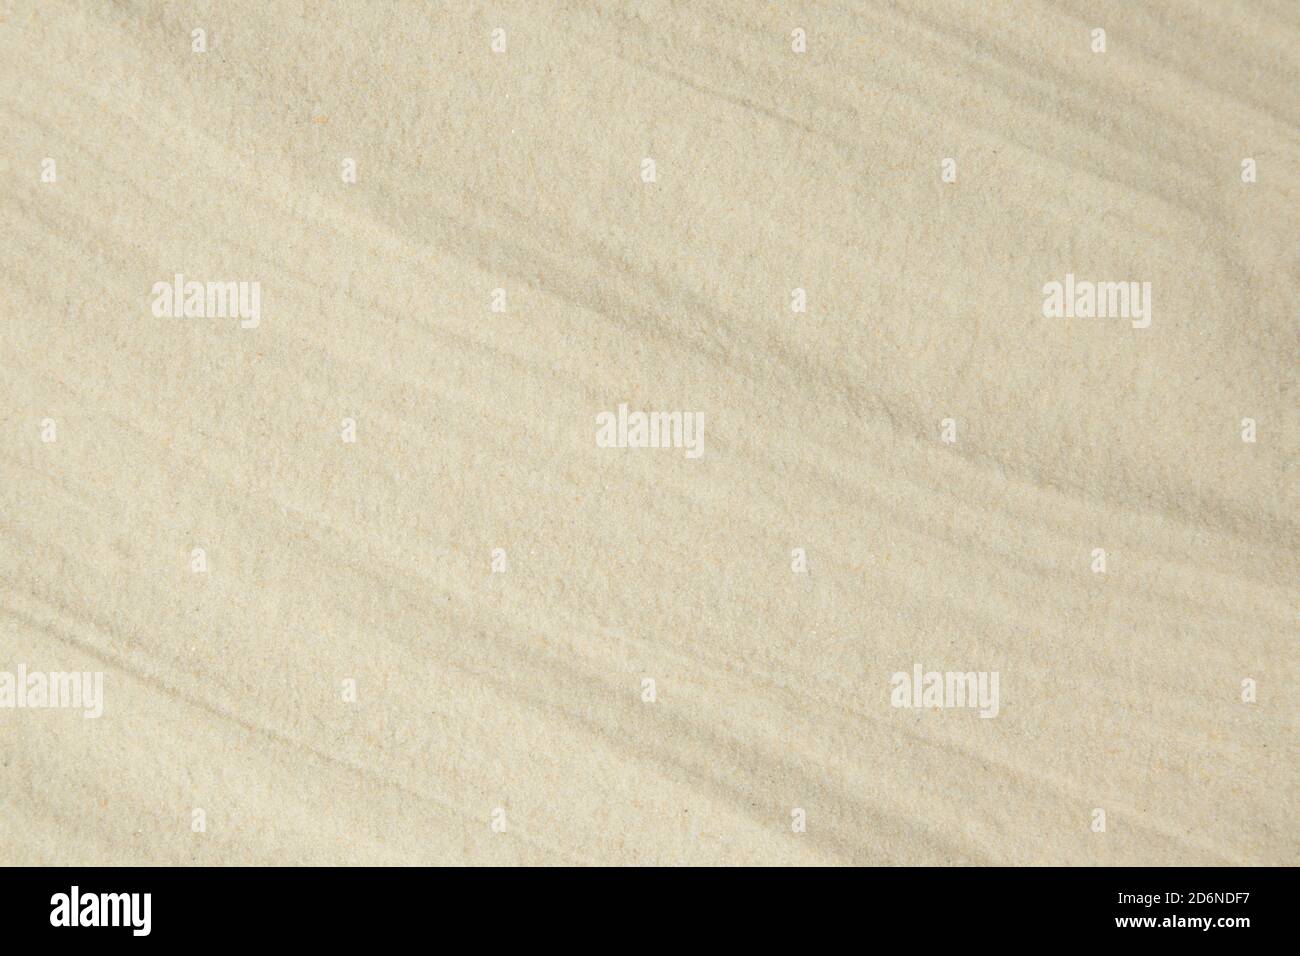 Un fond de sable fin de quartz, posé avec des vagues douces. Modèle. Banque D'Images